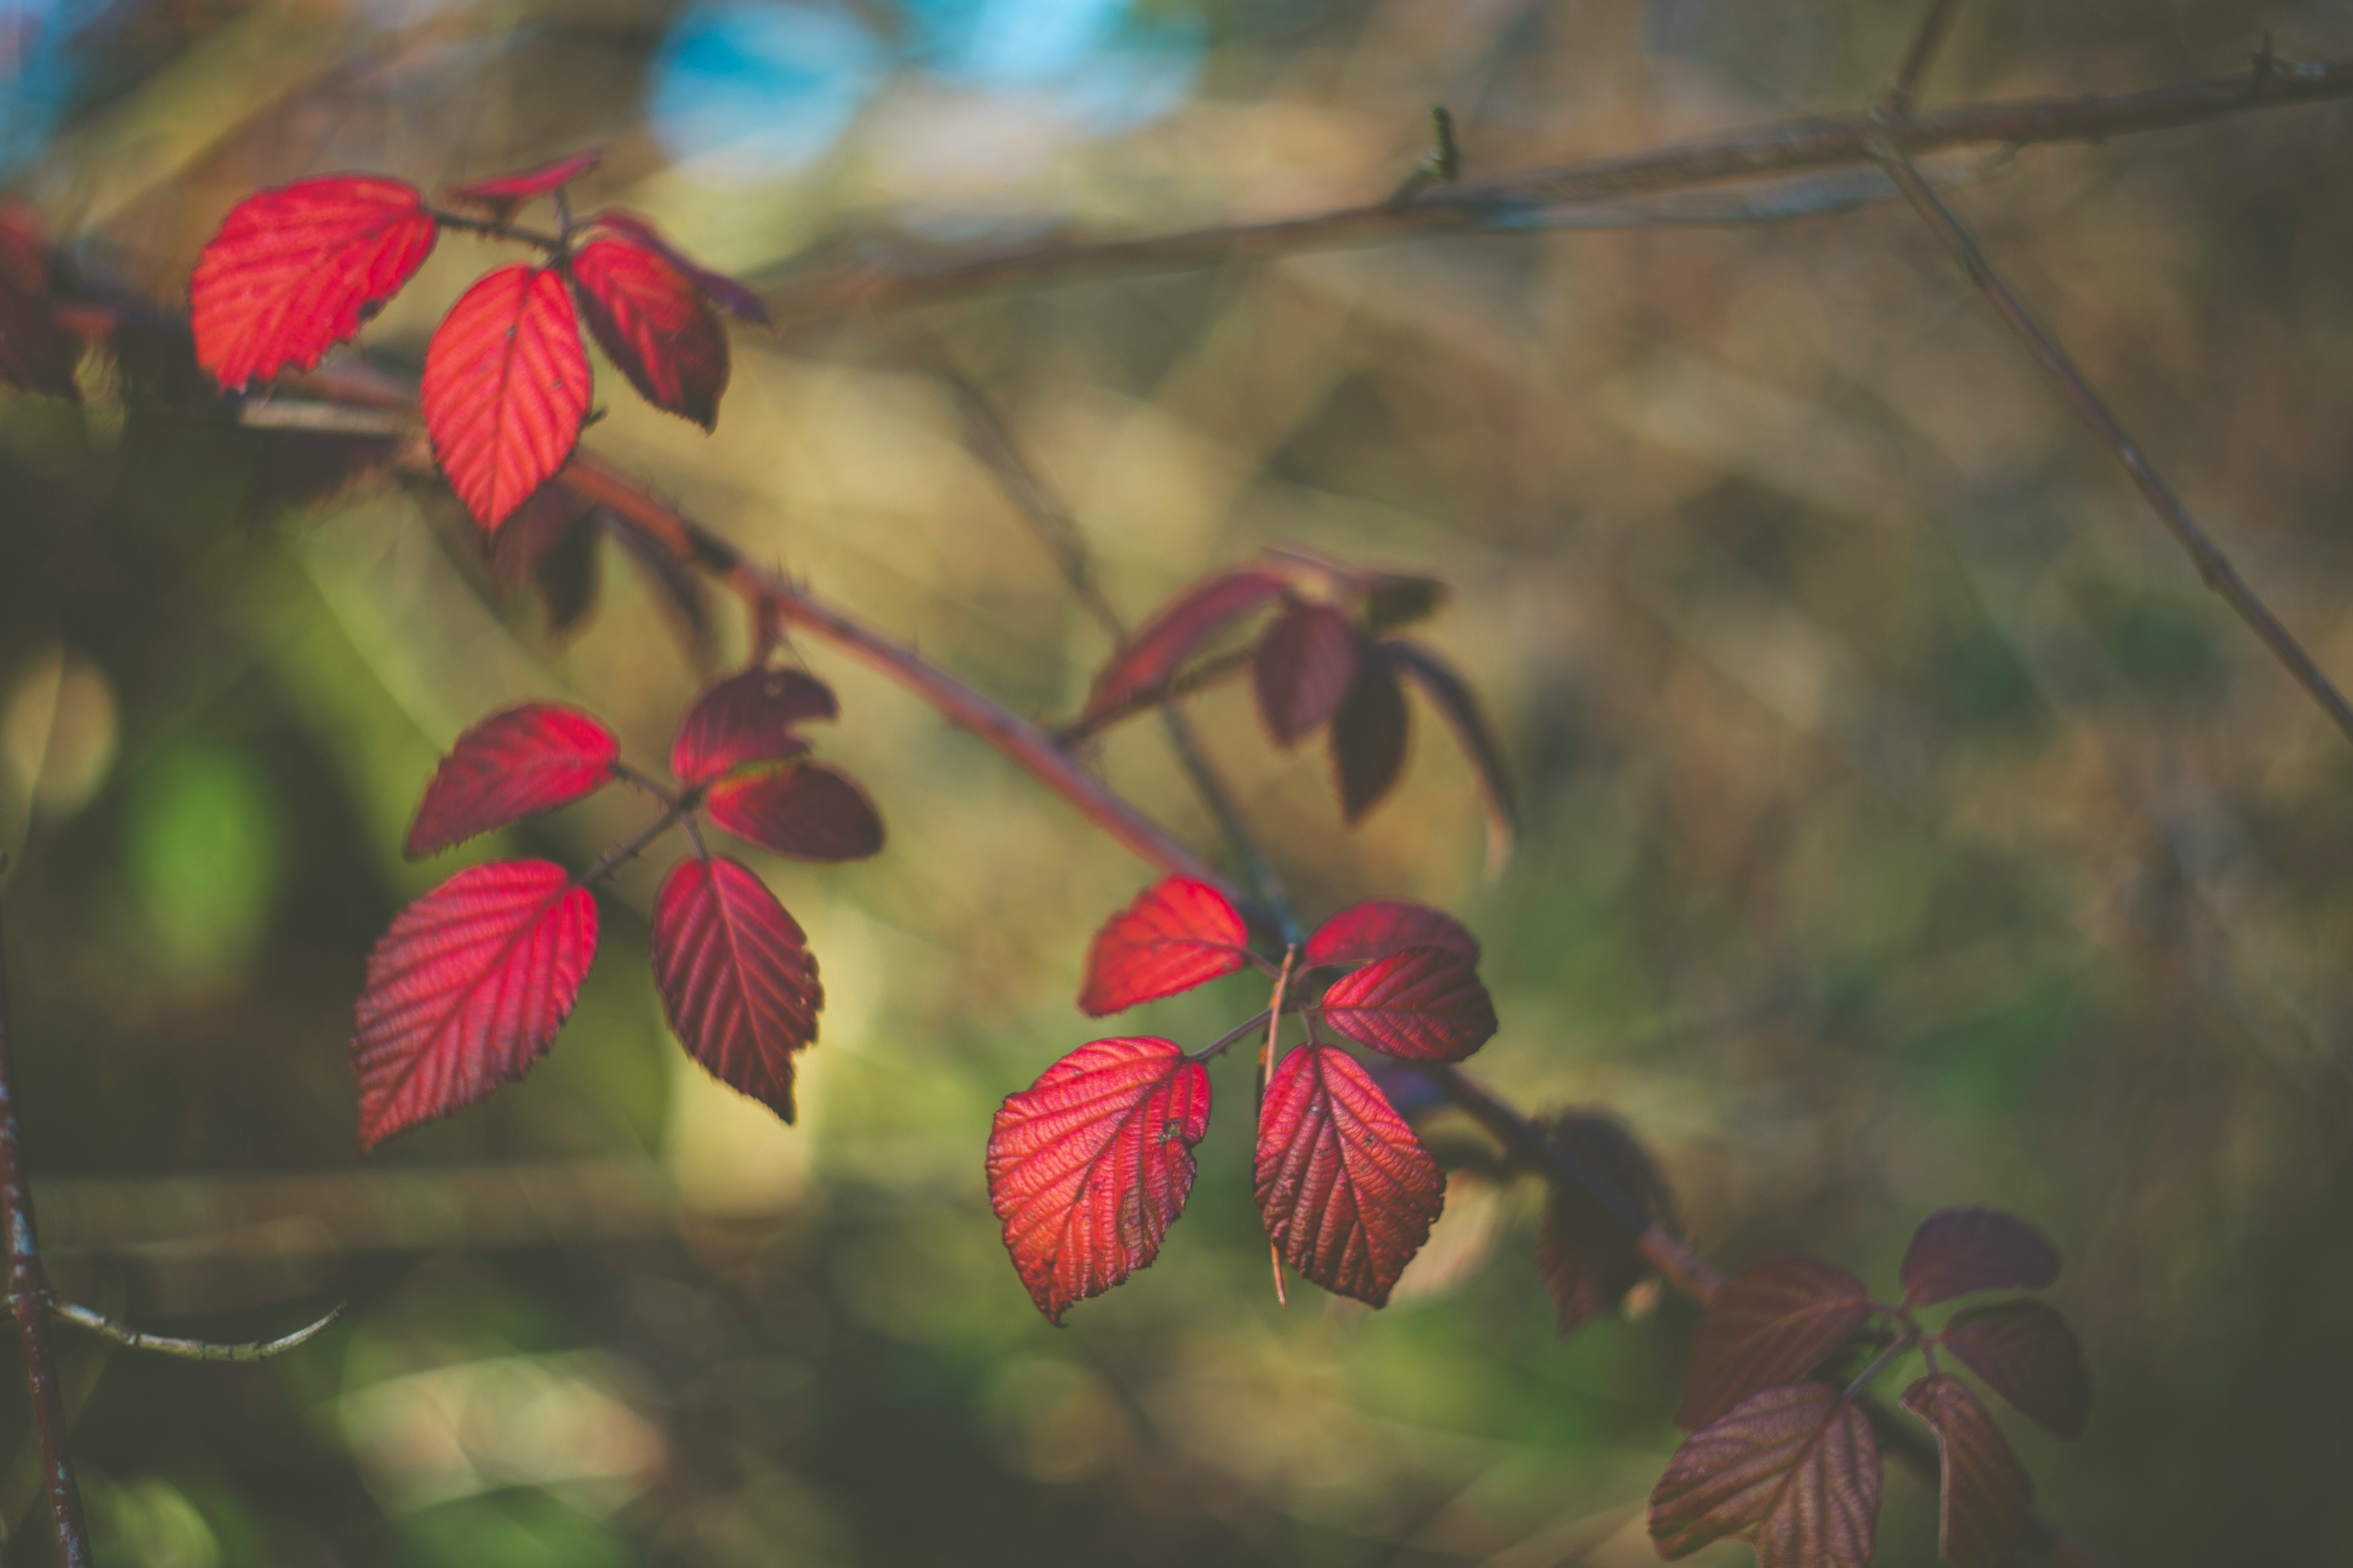 red and green leaves in tilt shift lens